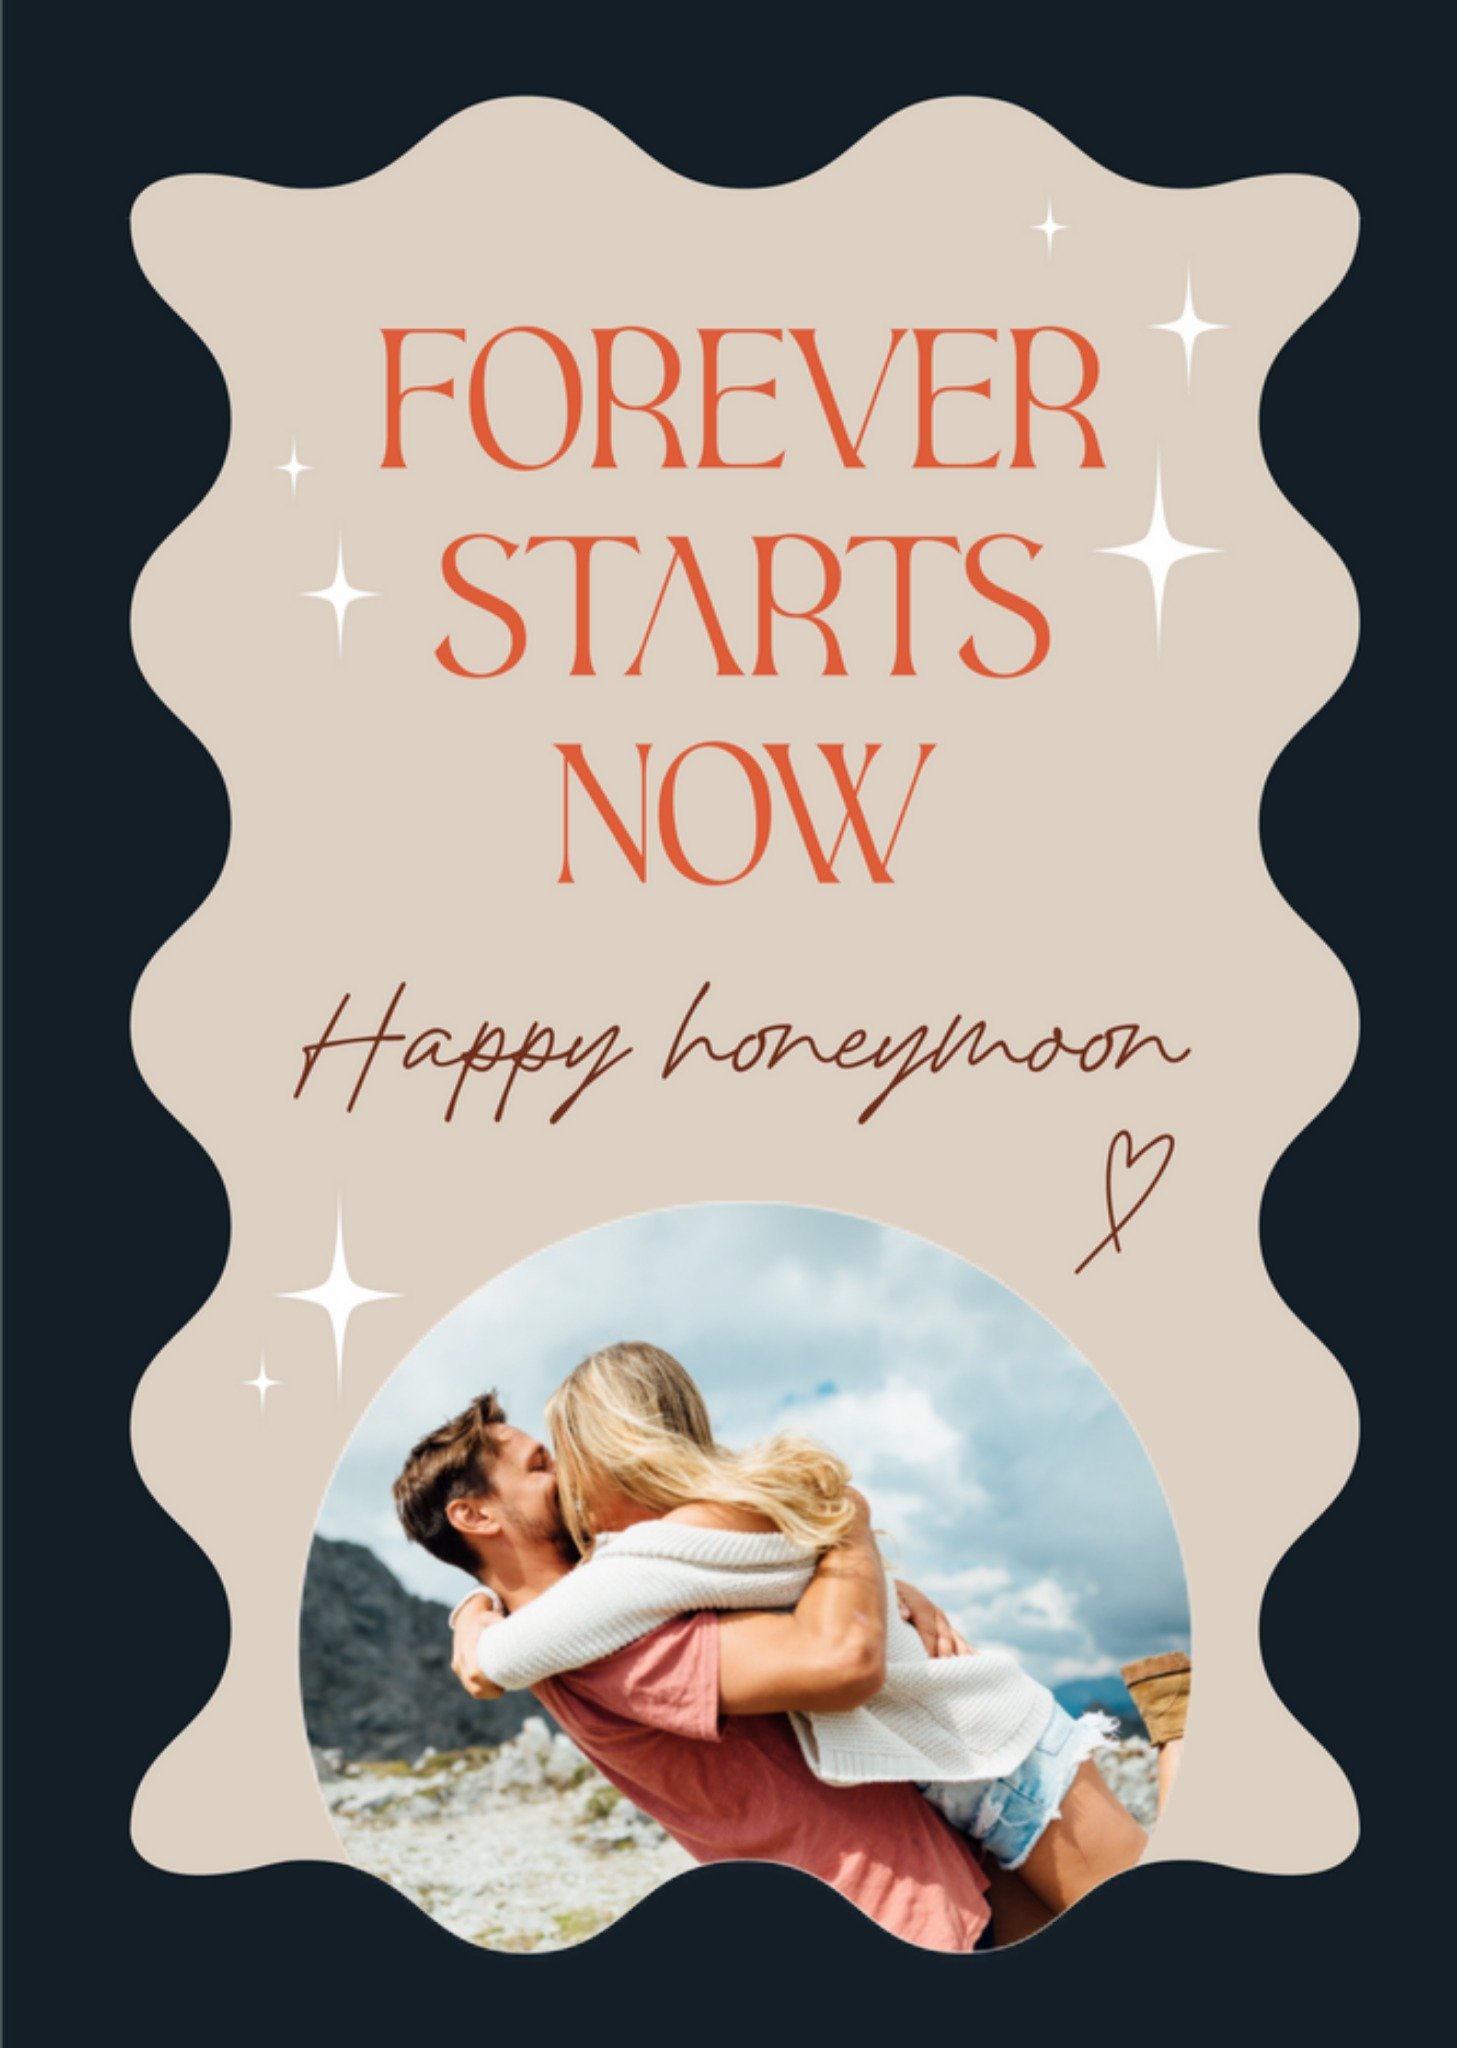 Huwelijkskaart - Honeymoon - Forever starts now - Met foto